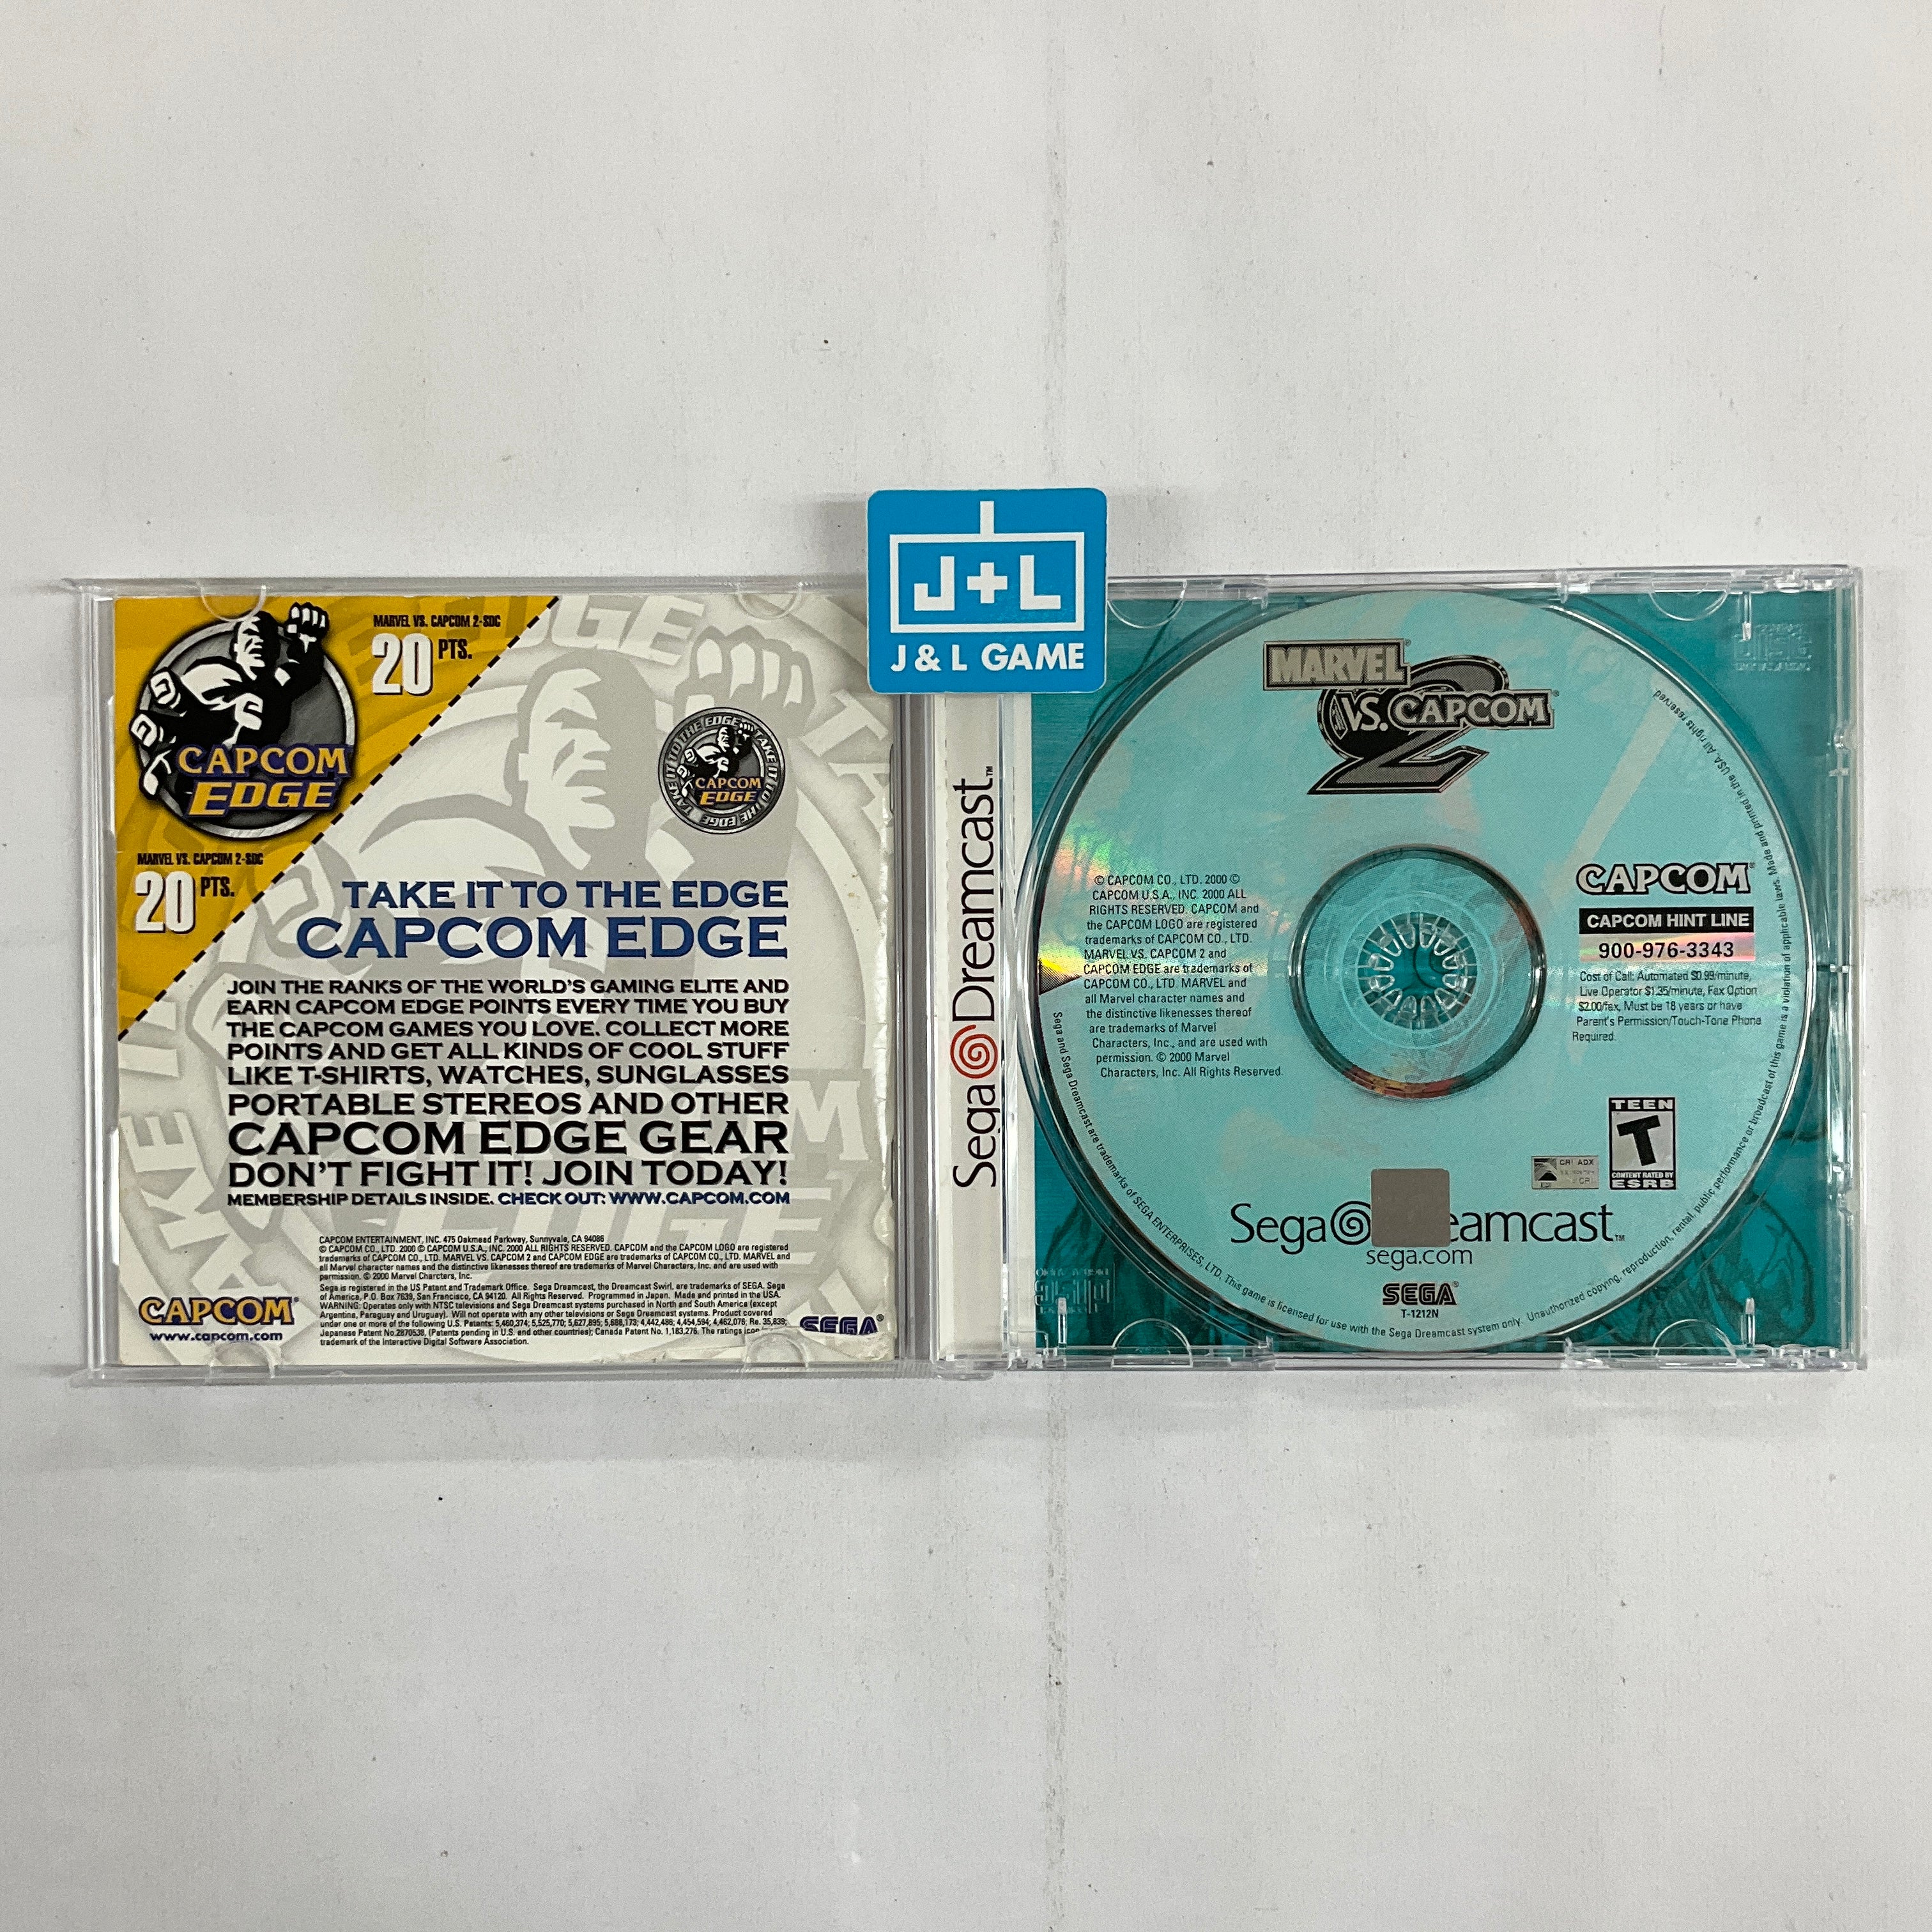 Marvel vs Capcom 2 - (DC) SEGA Dreamcast  [Pre-Owned] Video Games Capcom   